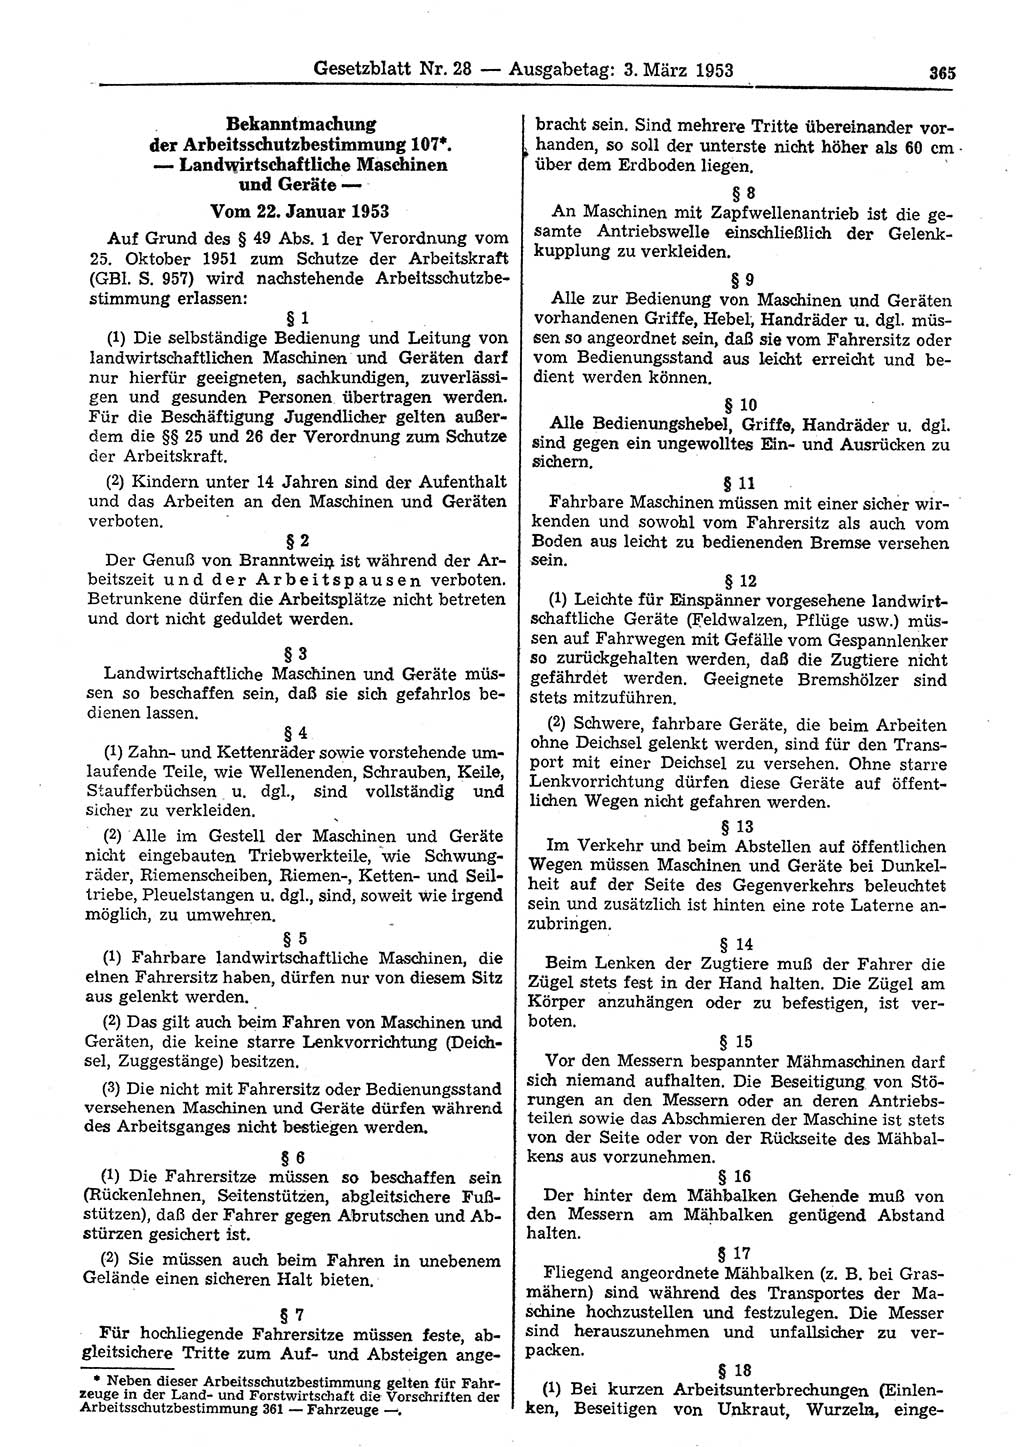 Gesetzblatt (GBl.) der Deutschen Demokratischen Republik (DDR) 1953, Seite 365 (GBl. DDR 1953, S. 365)